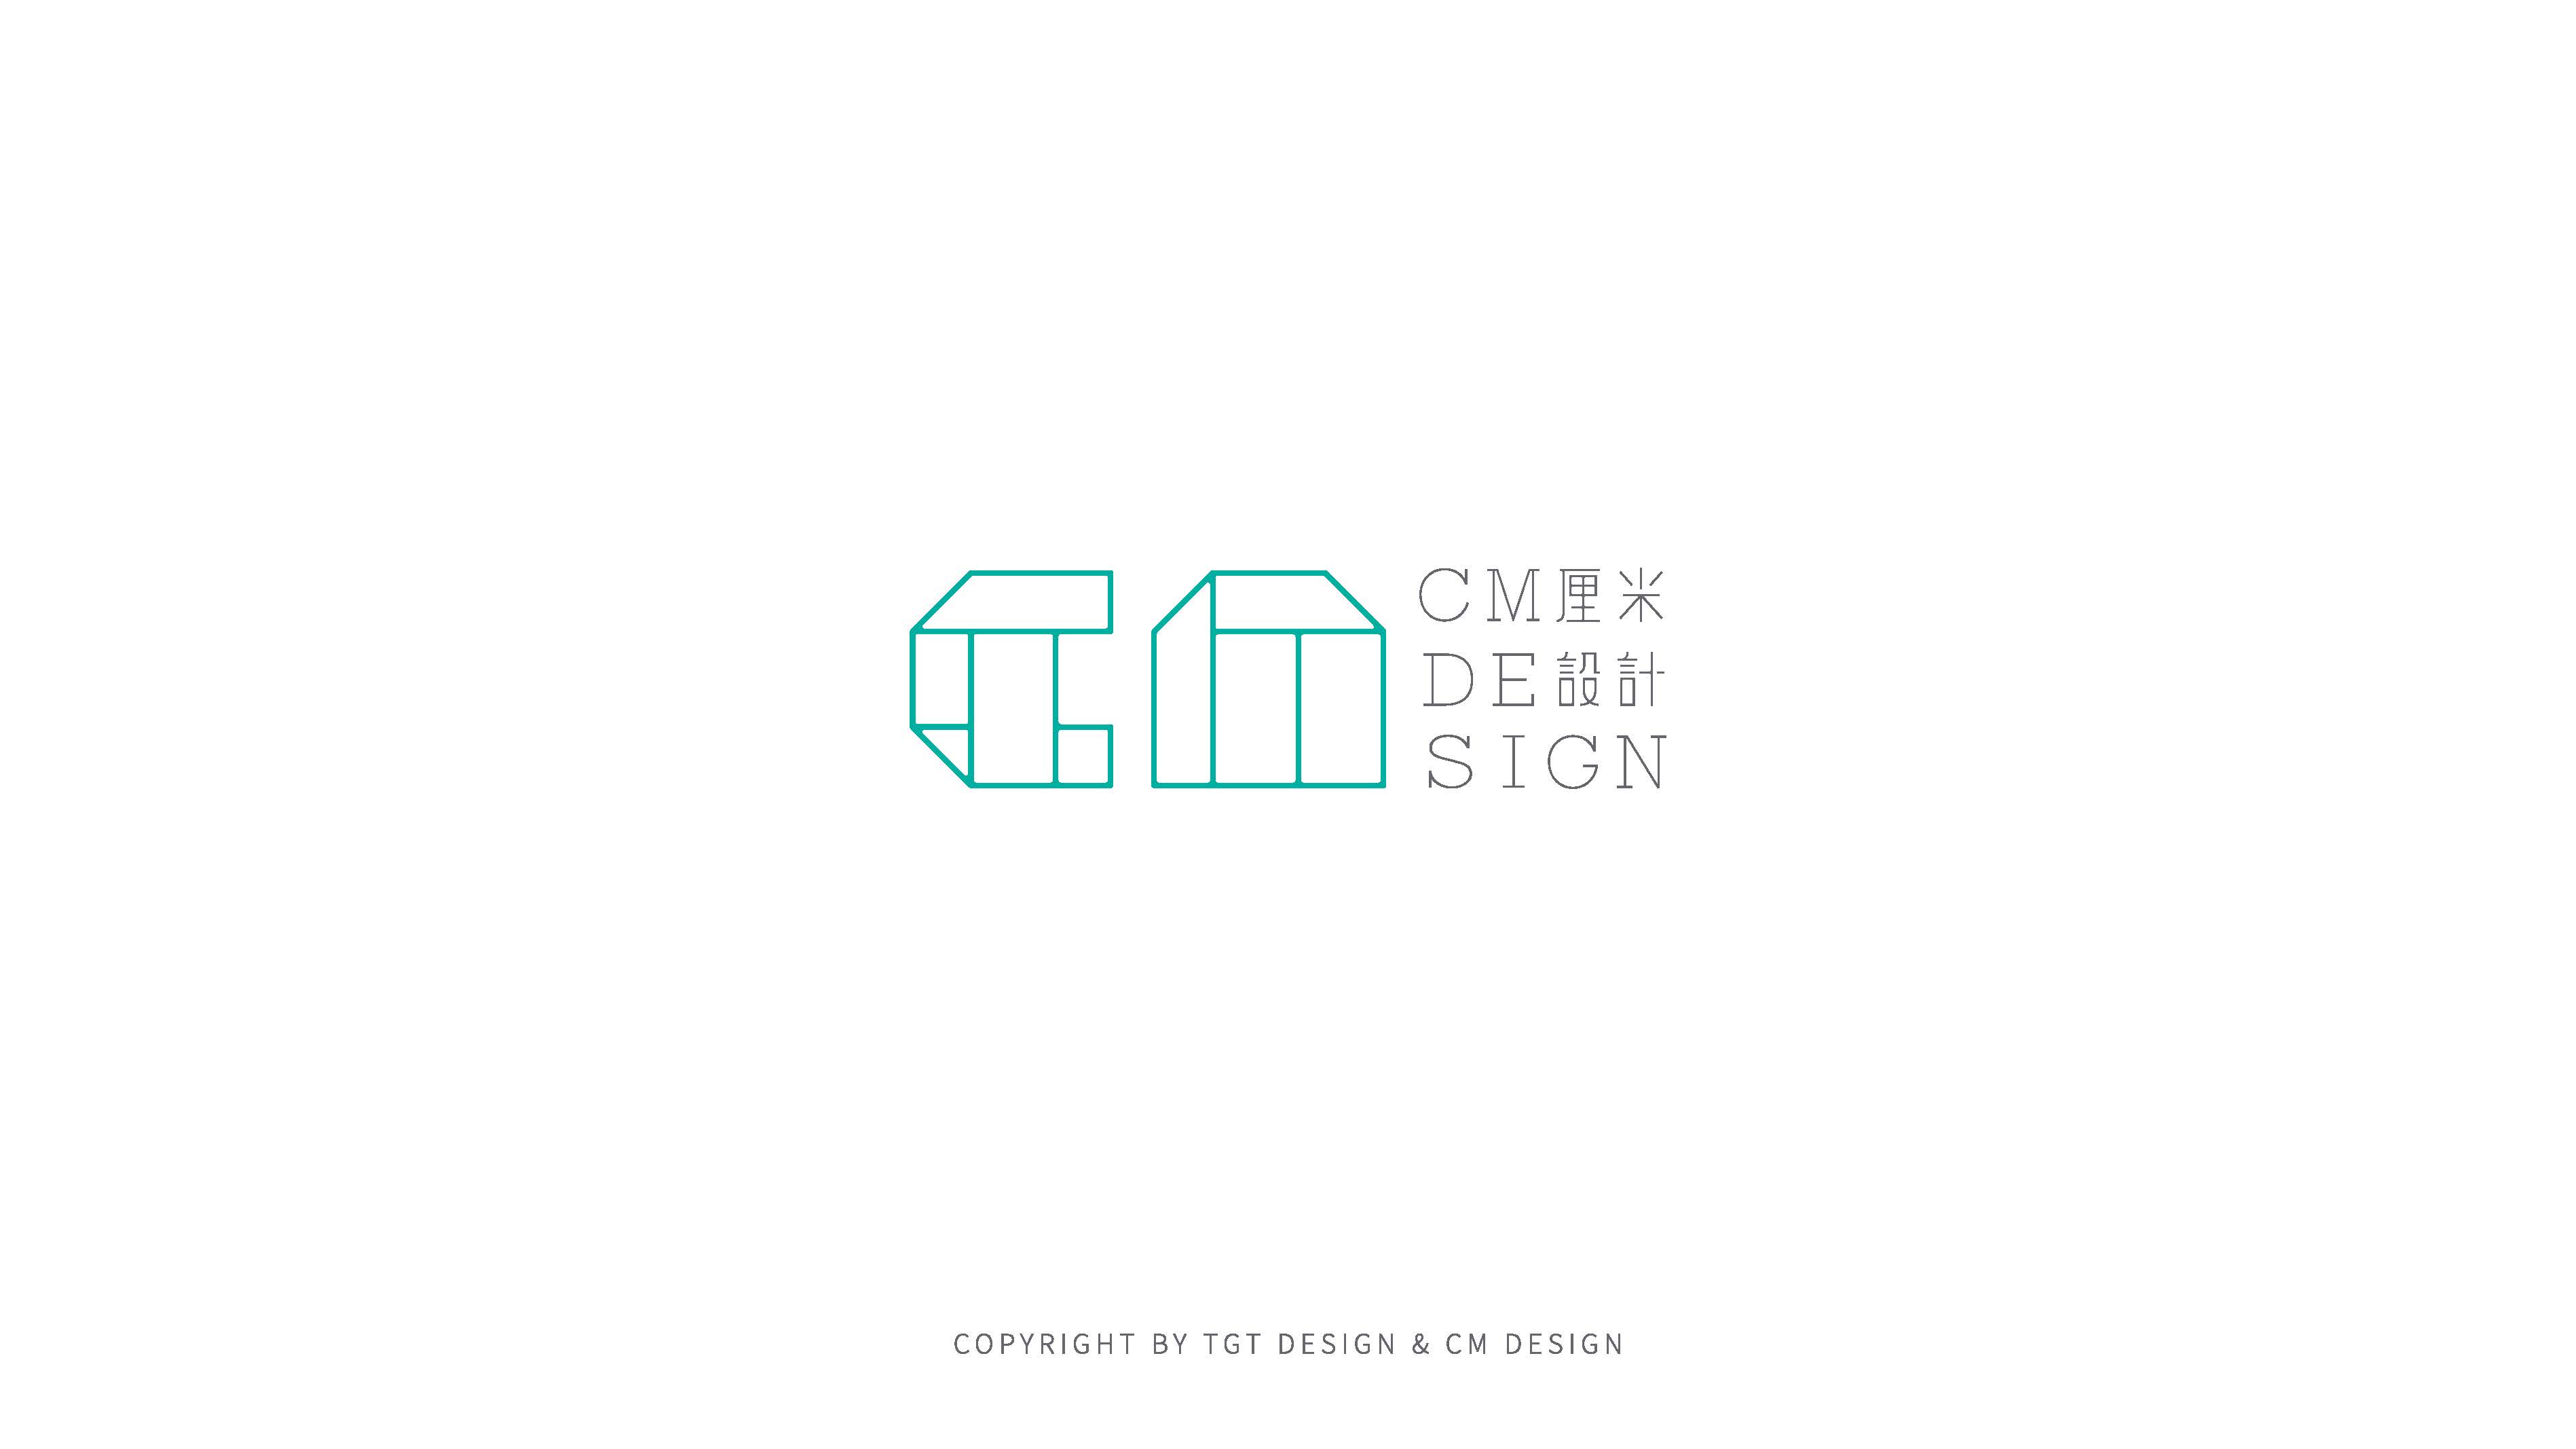 CM design公司简介_页面_01.jpg